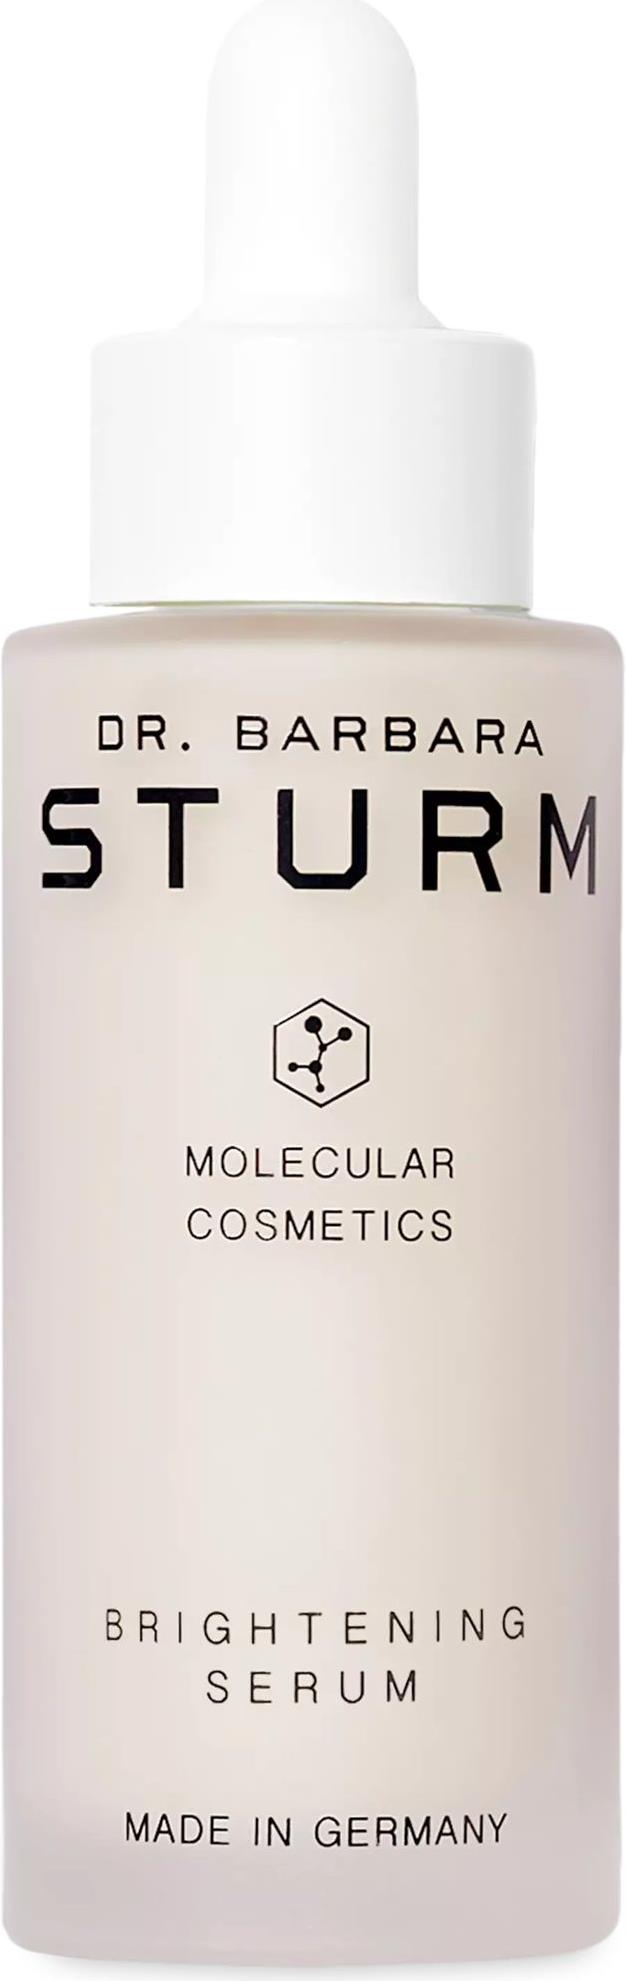 Dr. Barbara Sturm Brightening Serum (50 ml Gesichtsserum) Galaxus